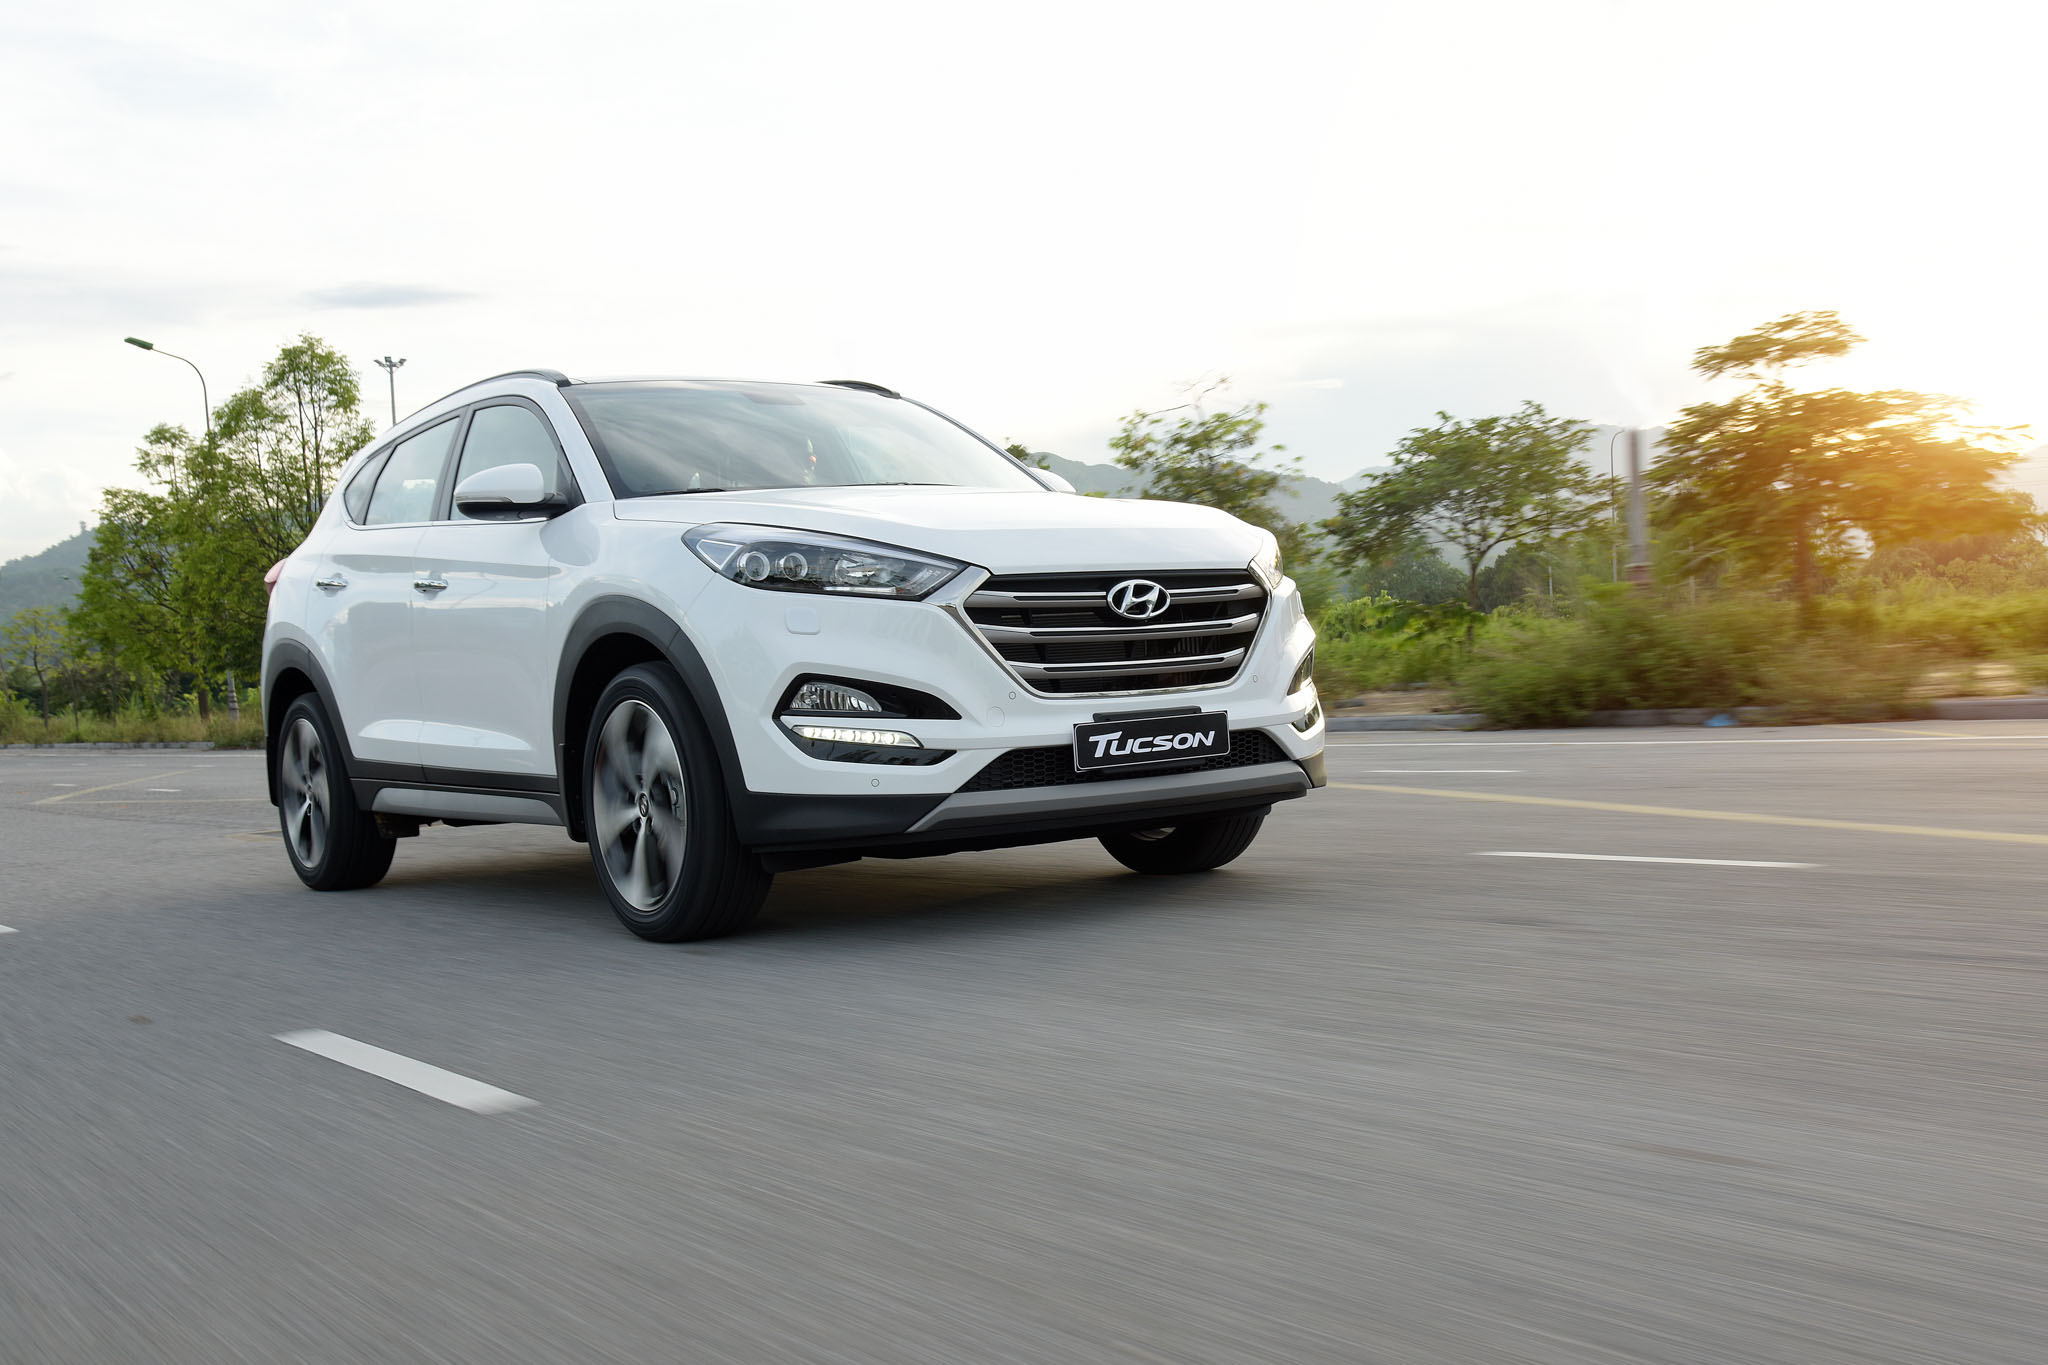 Hyundai Tucson 2017: 3 tuỳ chọn động cơ; giá khởi điểm từ 815 triệu đồng - 1